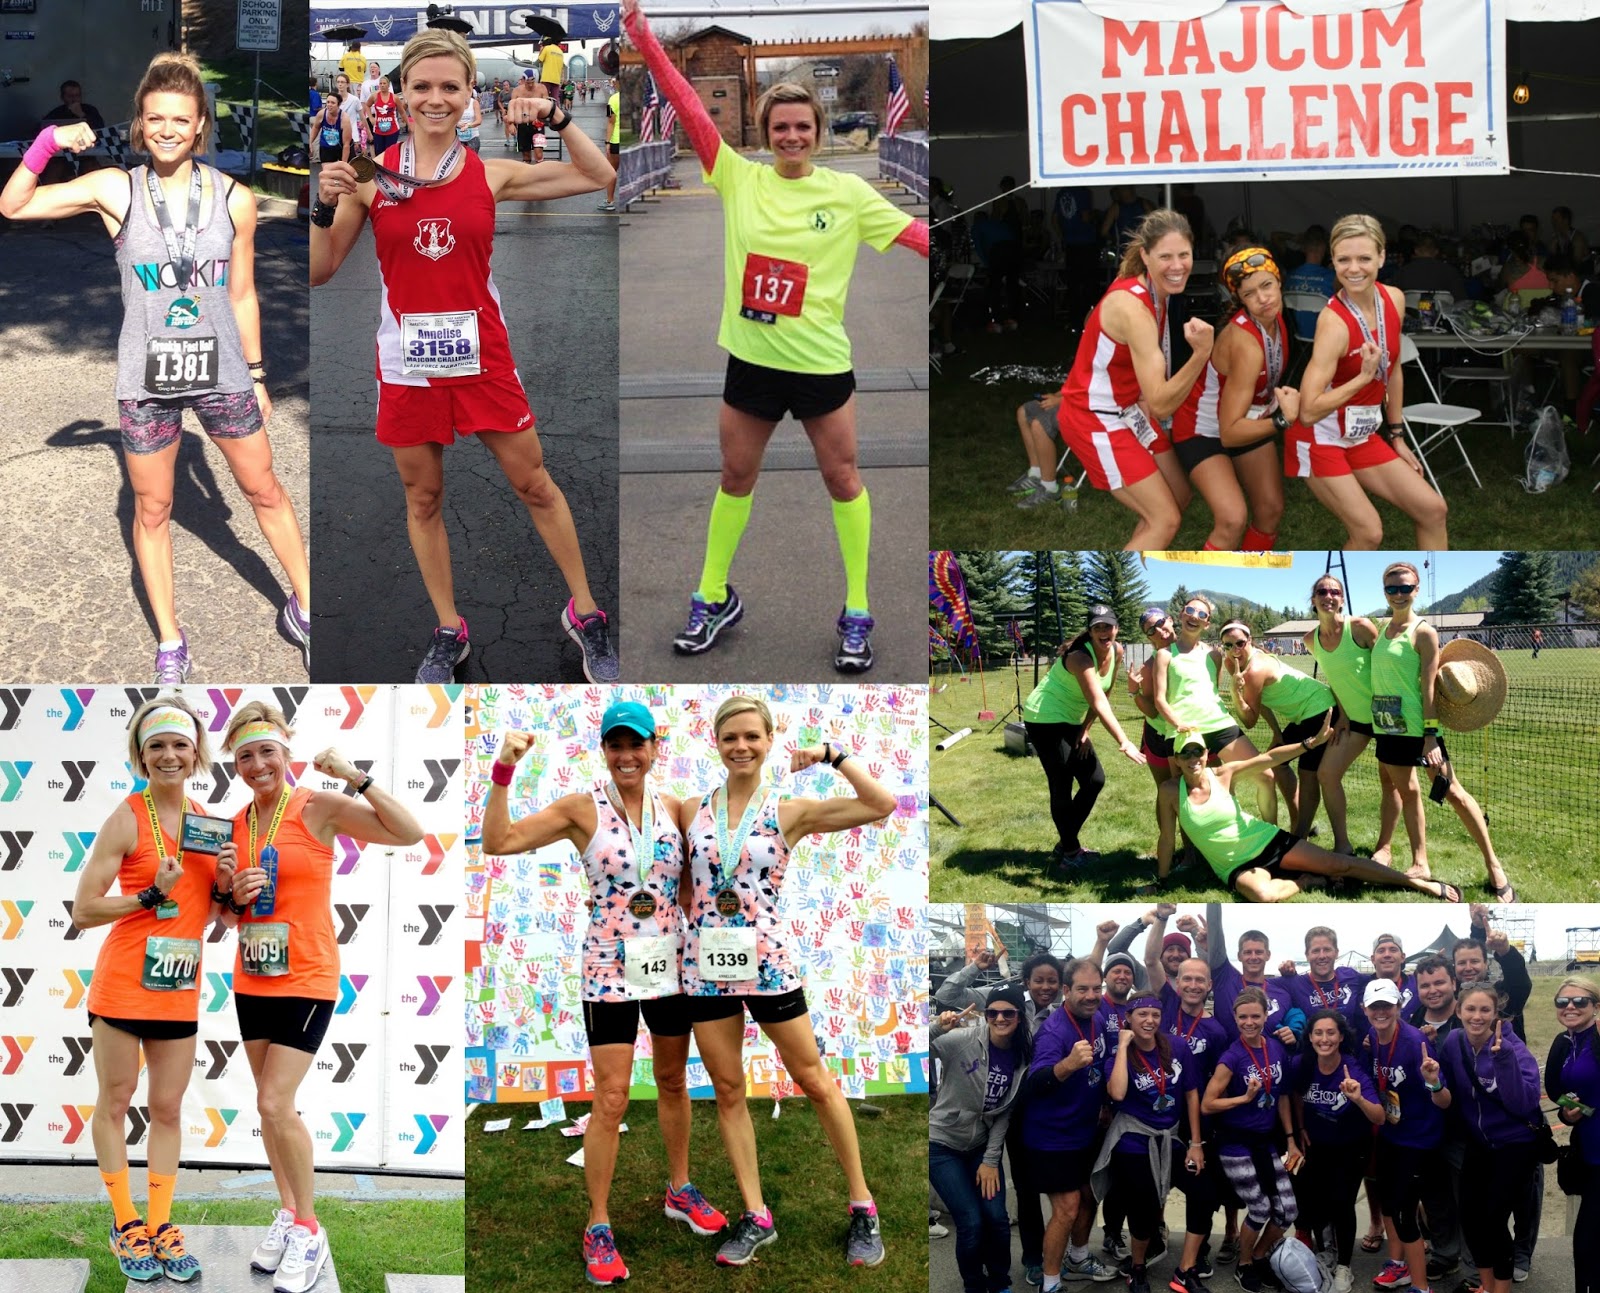 Boise Runner, Air Force Runner, Half and Full Marathon Runner